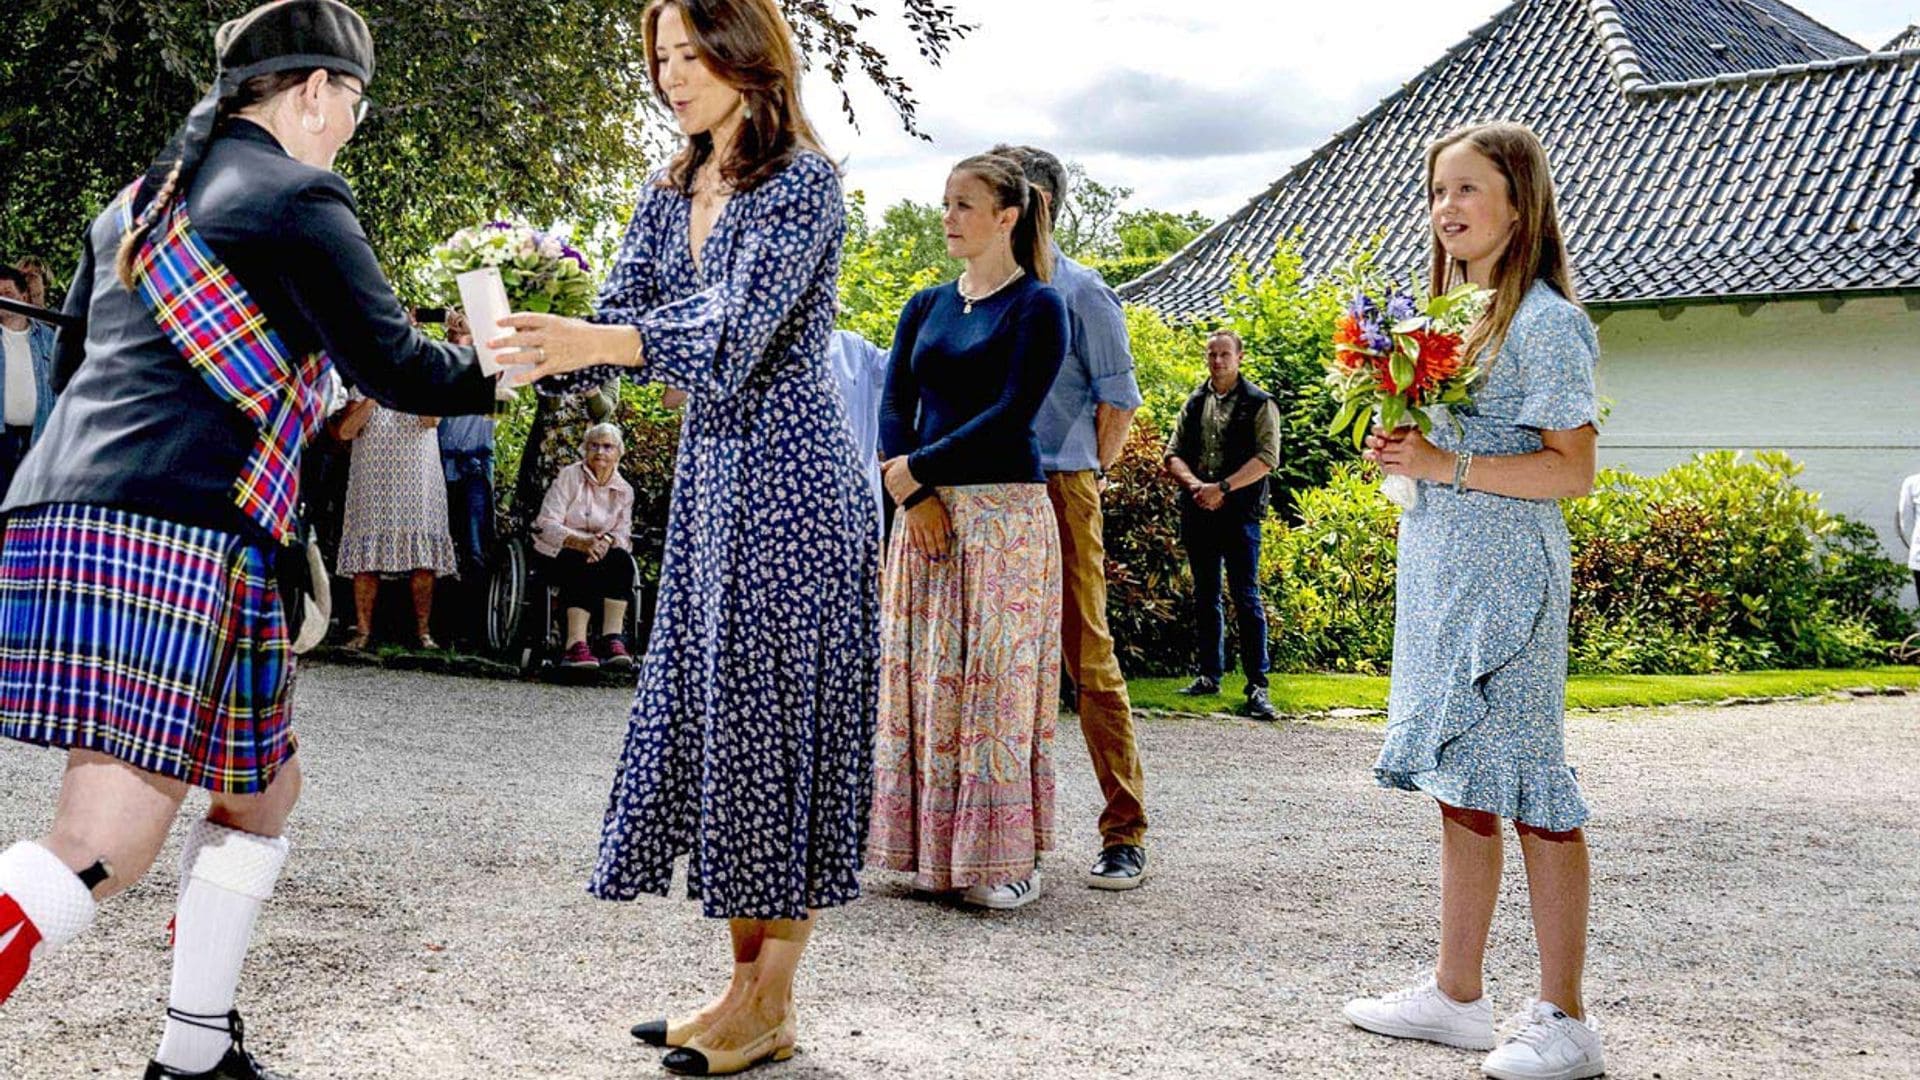 Josephine de Dinamarca y el fenómeno de las zapatillas blancas entre las jóvenes 'royals'